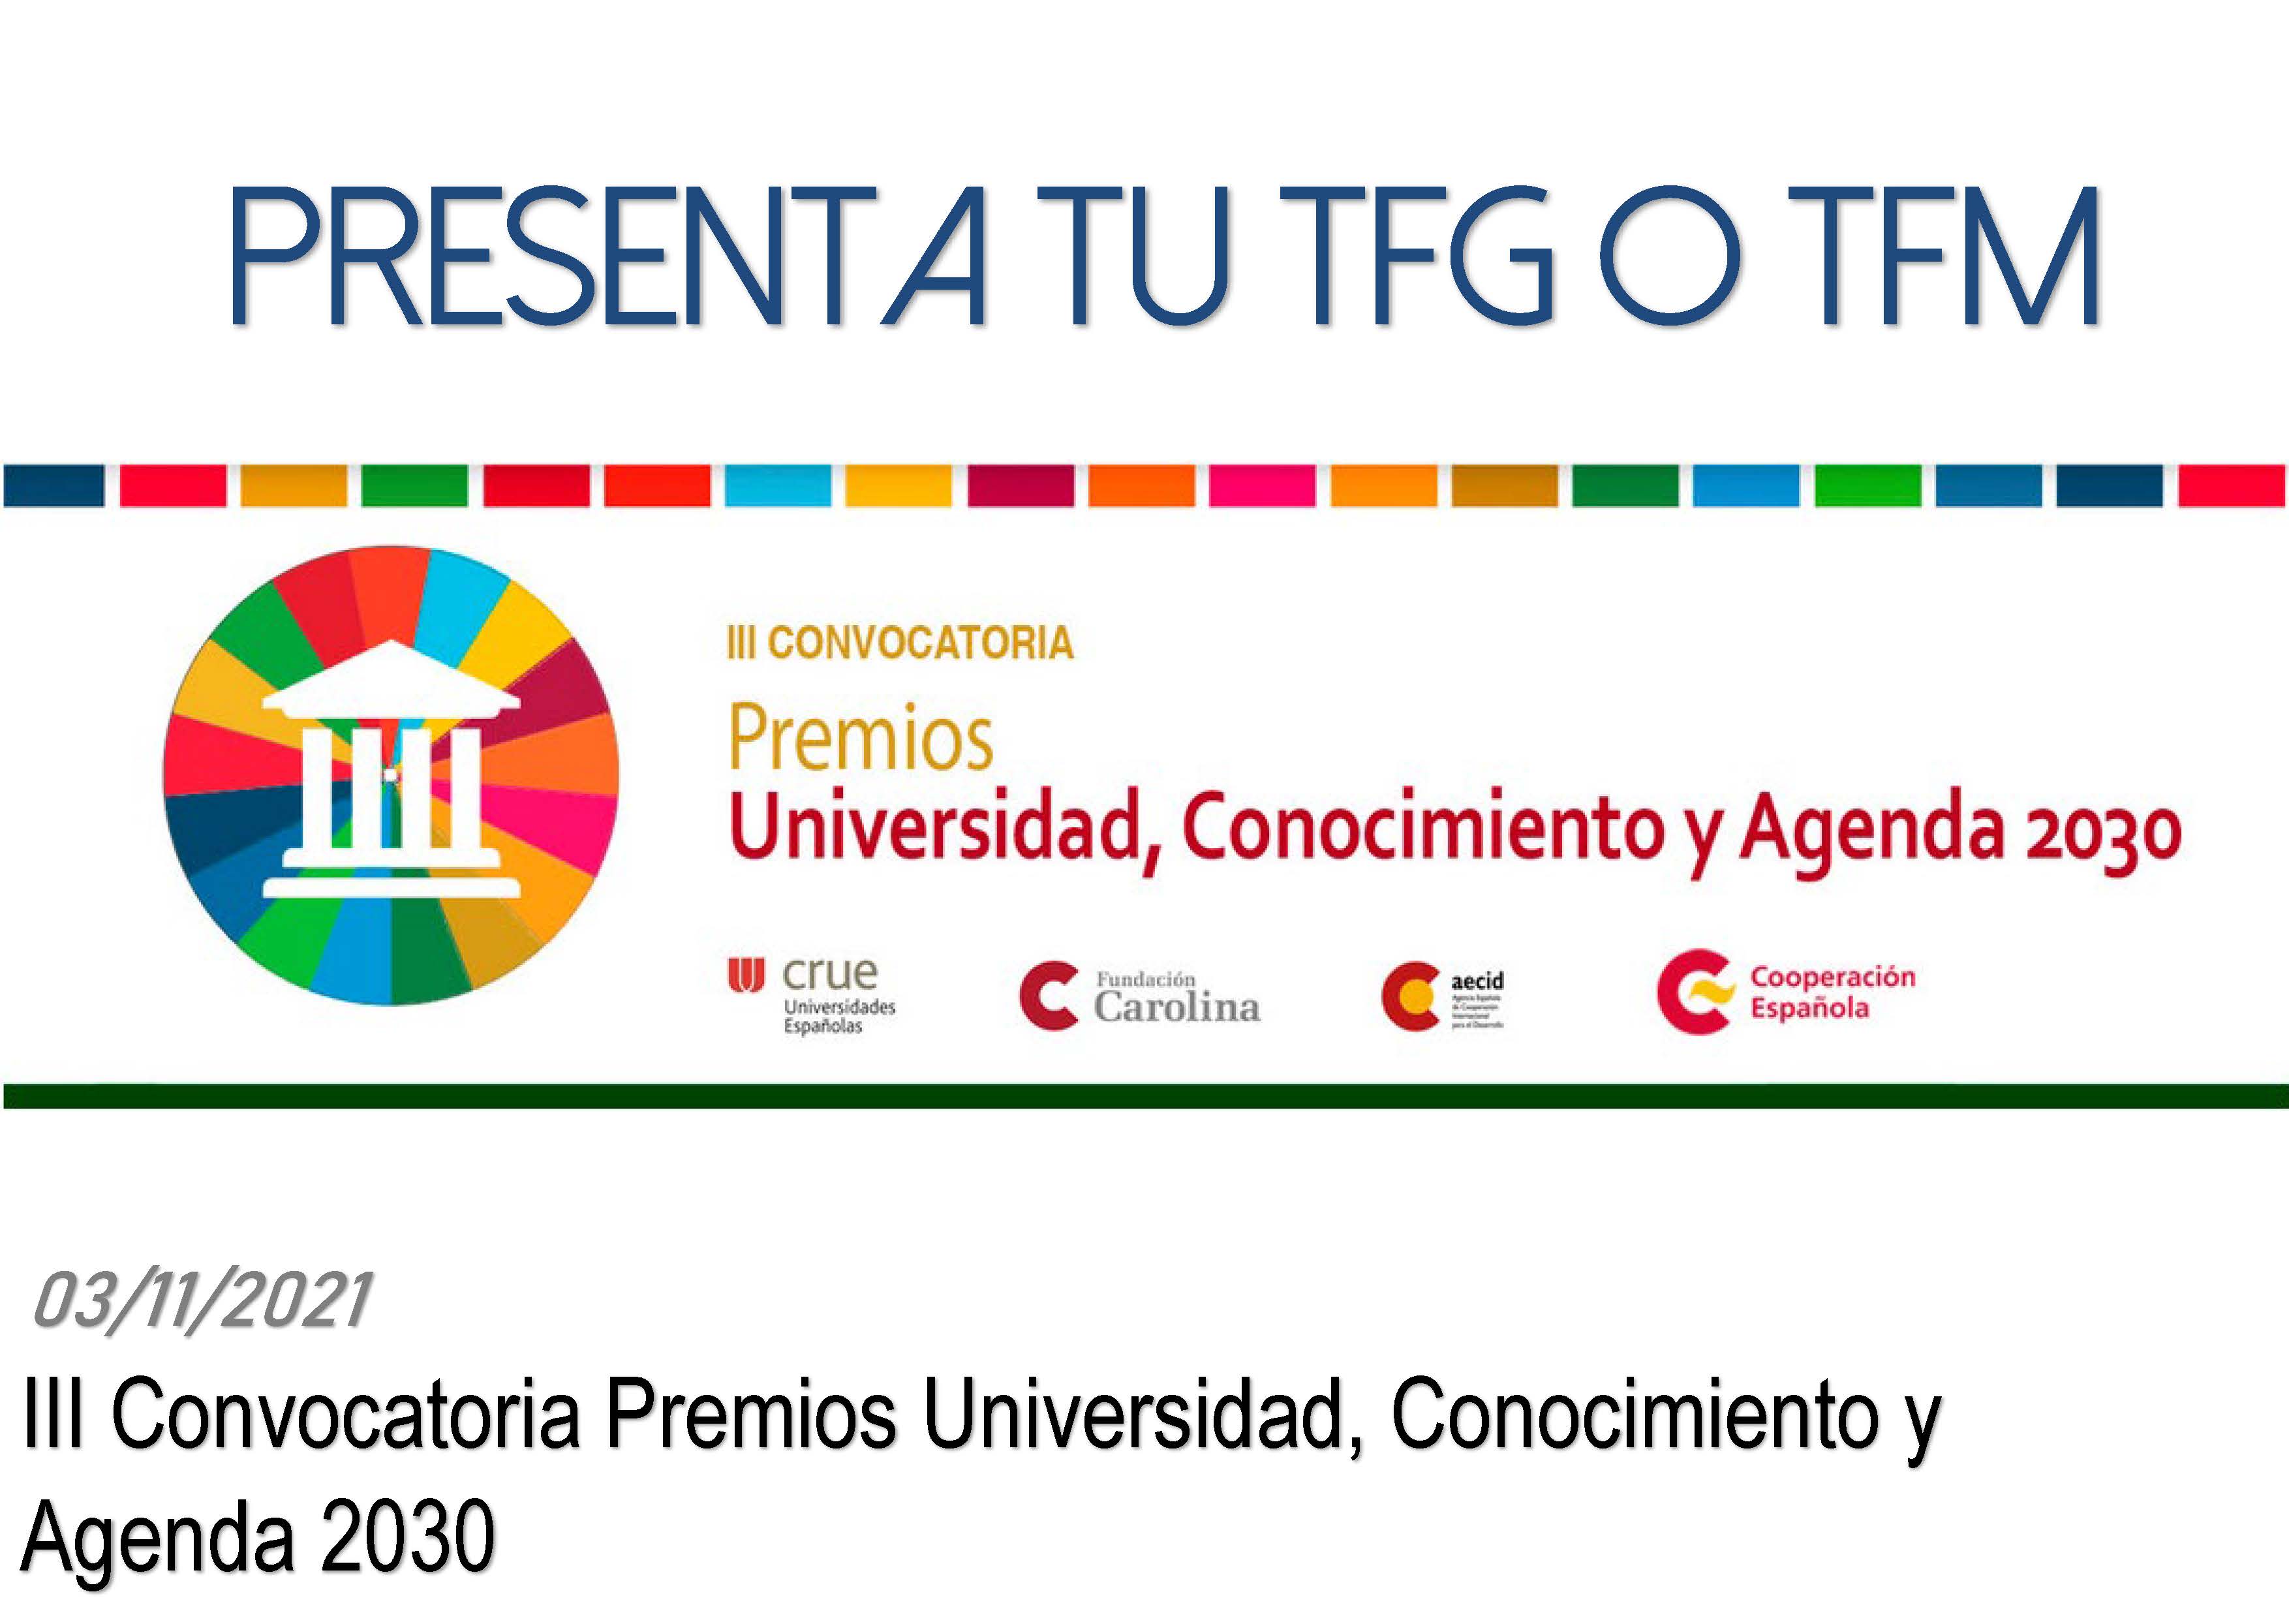 III Convocatoria Premios Universidad, Conocimiento y Agenda 2030